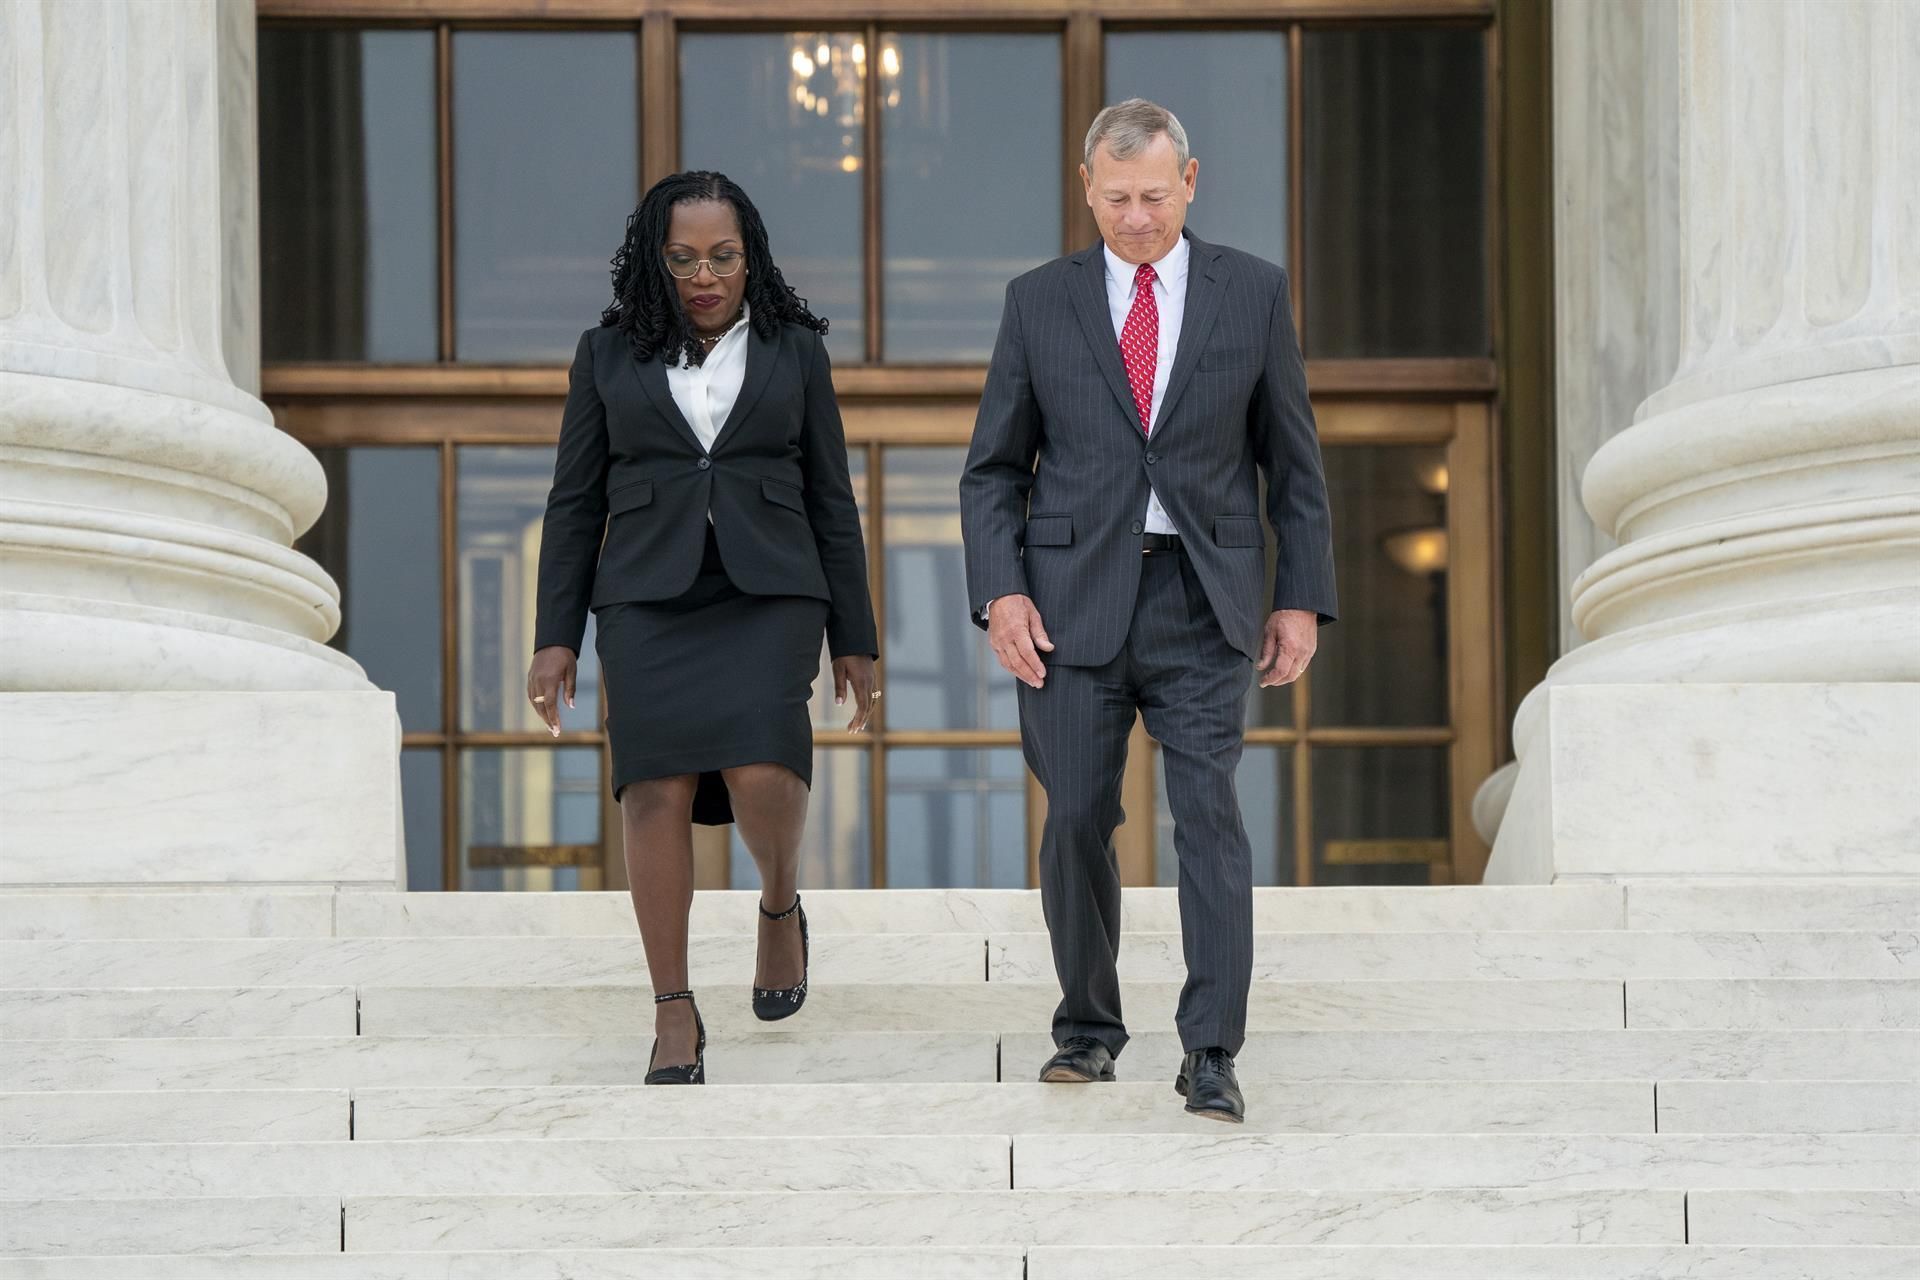 El presidente del Tribunal Supremo, John Roberts (d) camina con la jueza afroamericana del Tribunal Supremo Ketanji Brown Jackson en Washington, DC, EE. UU. EFE/EPA/Shawn Thew